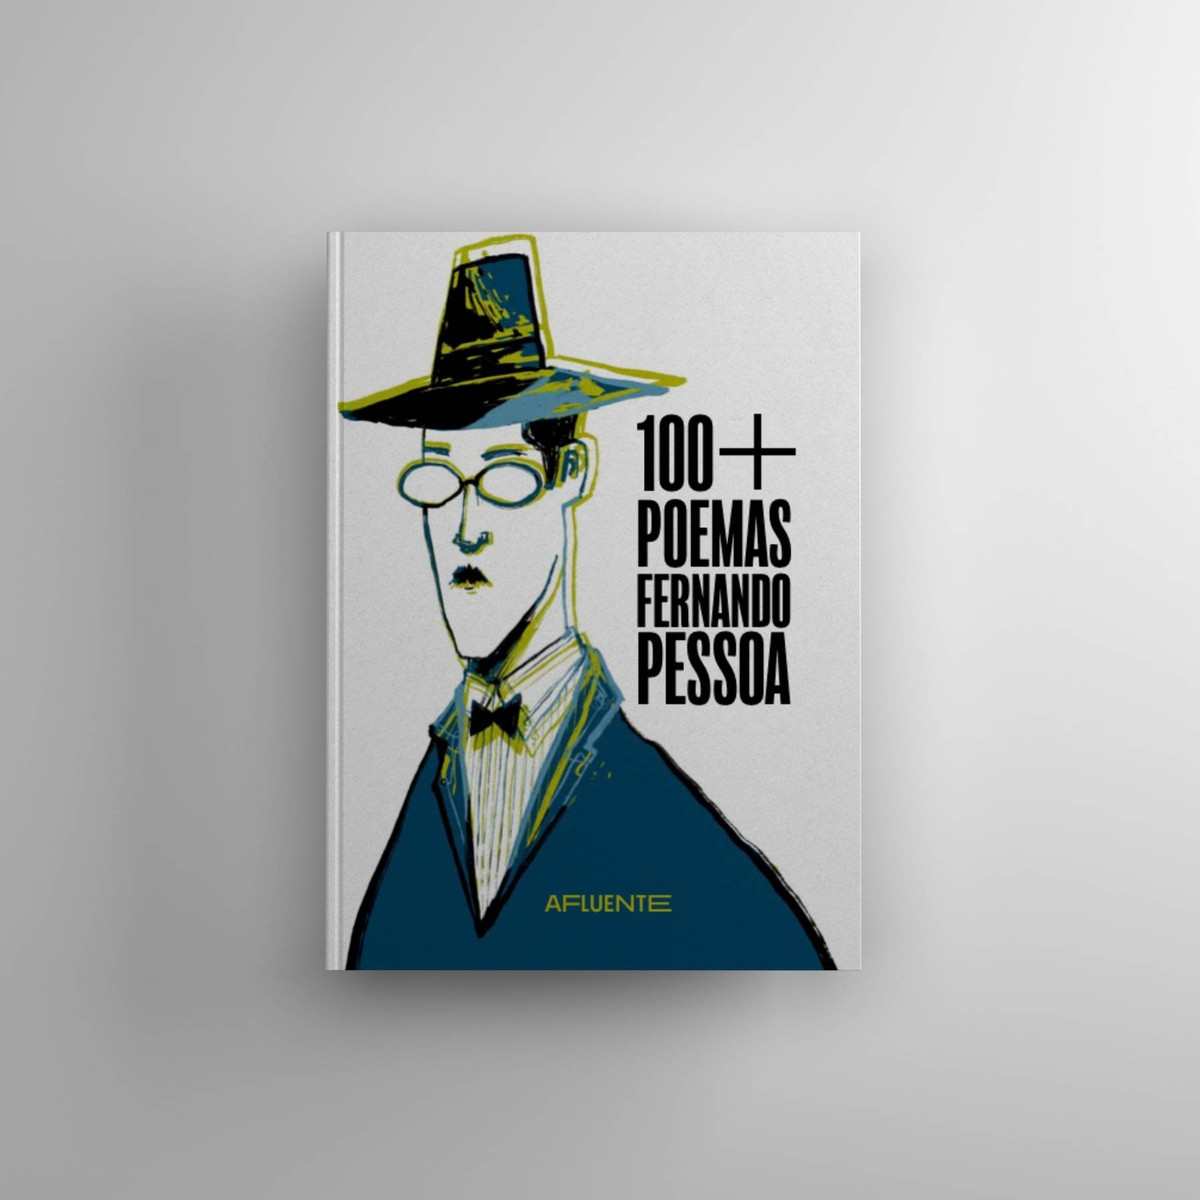 100+ Poemas Fernando Pessoa